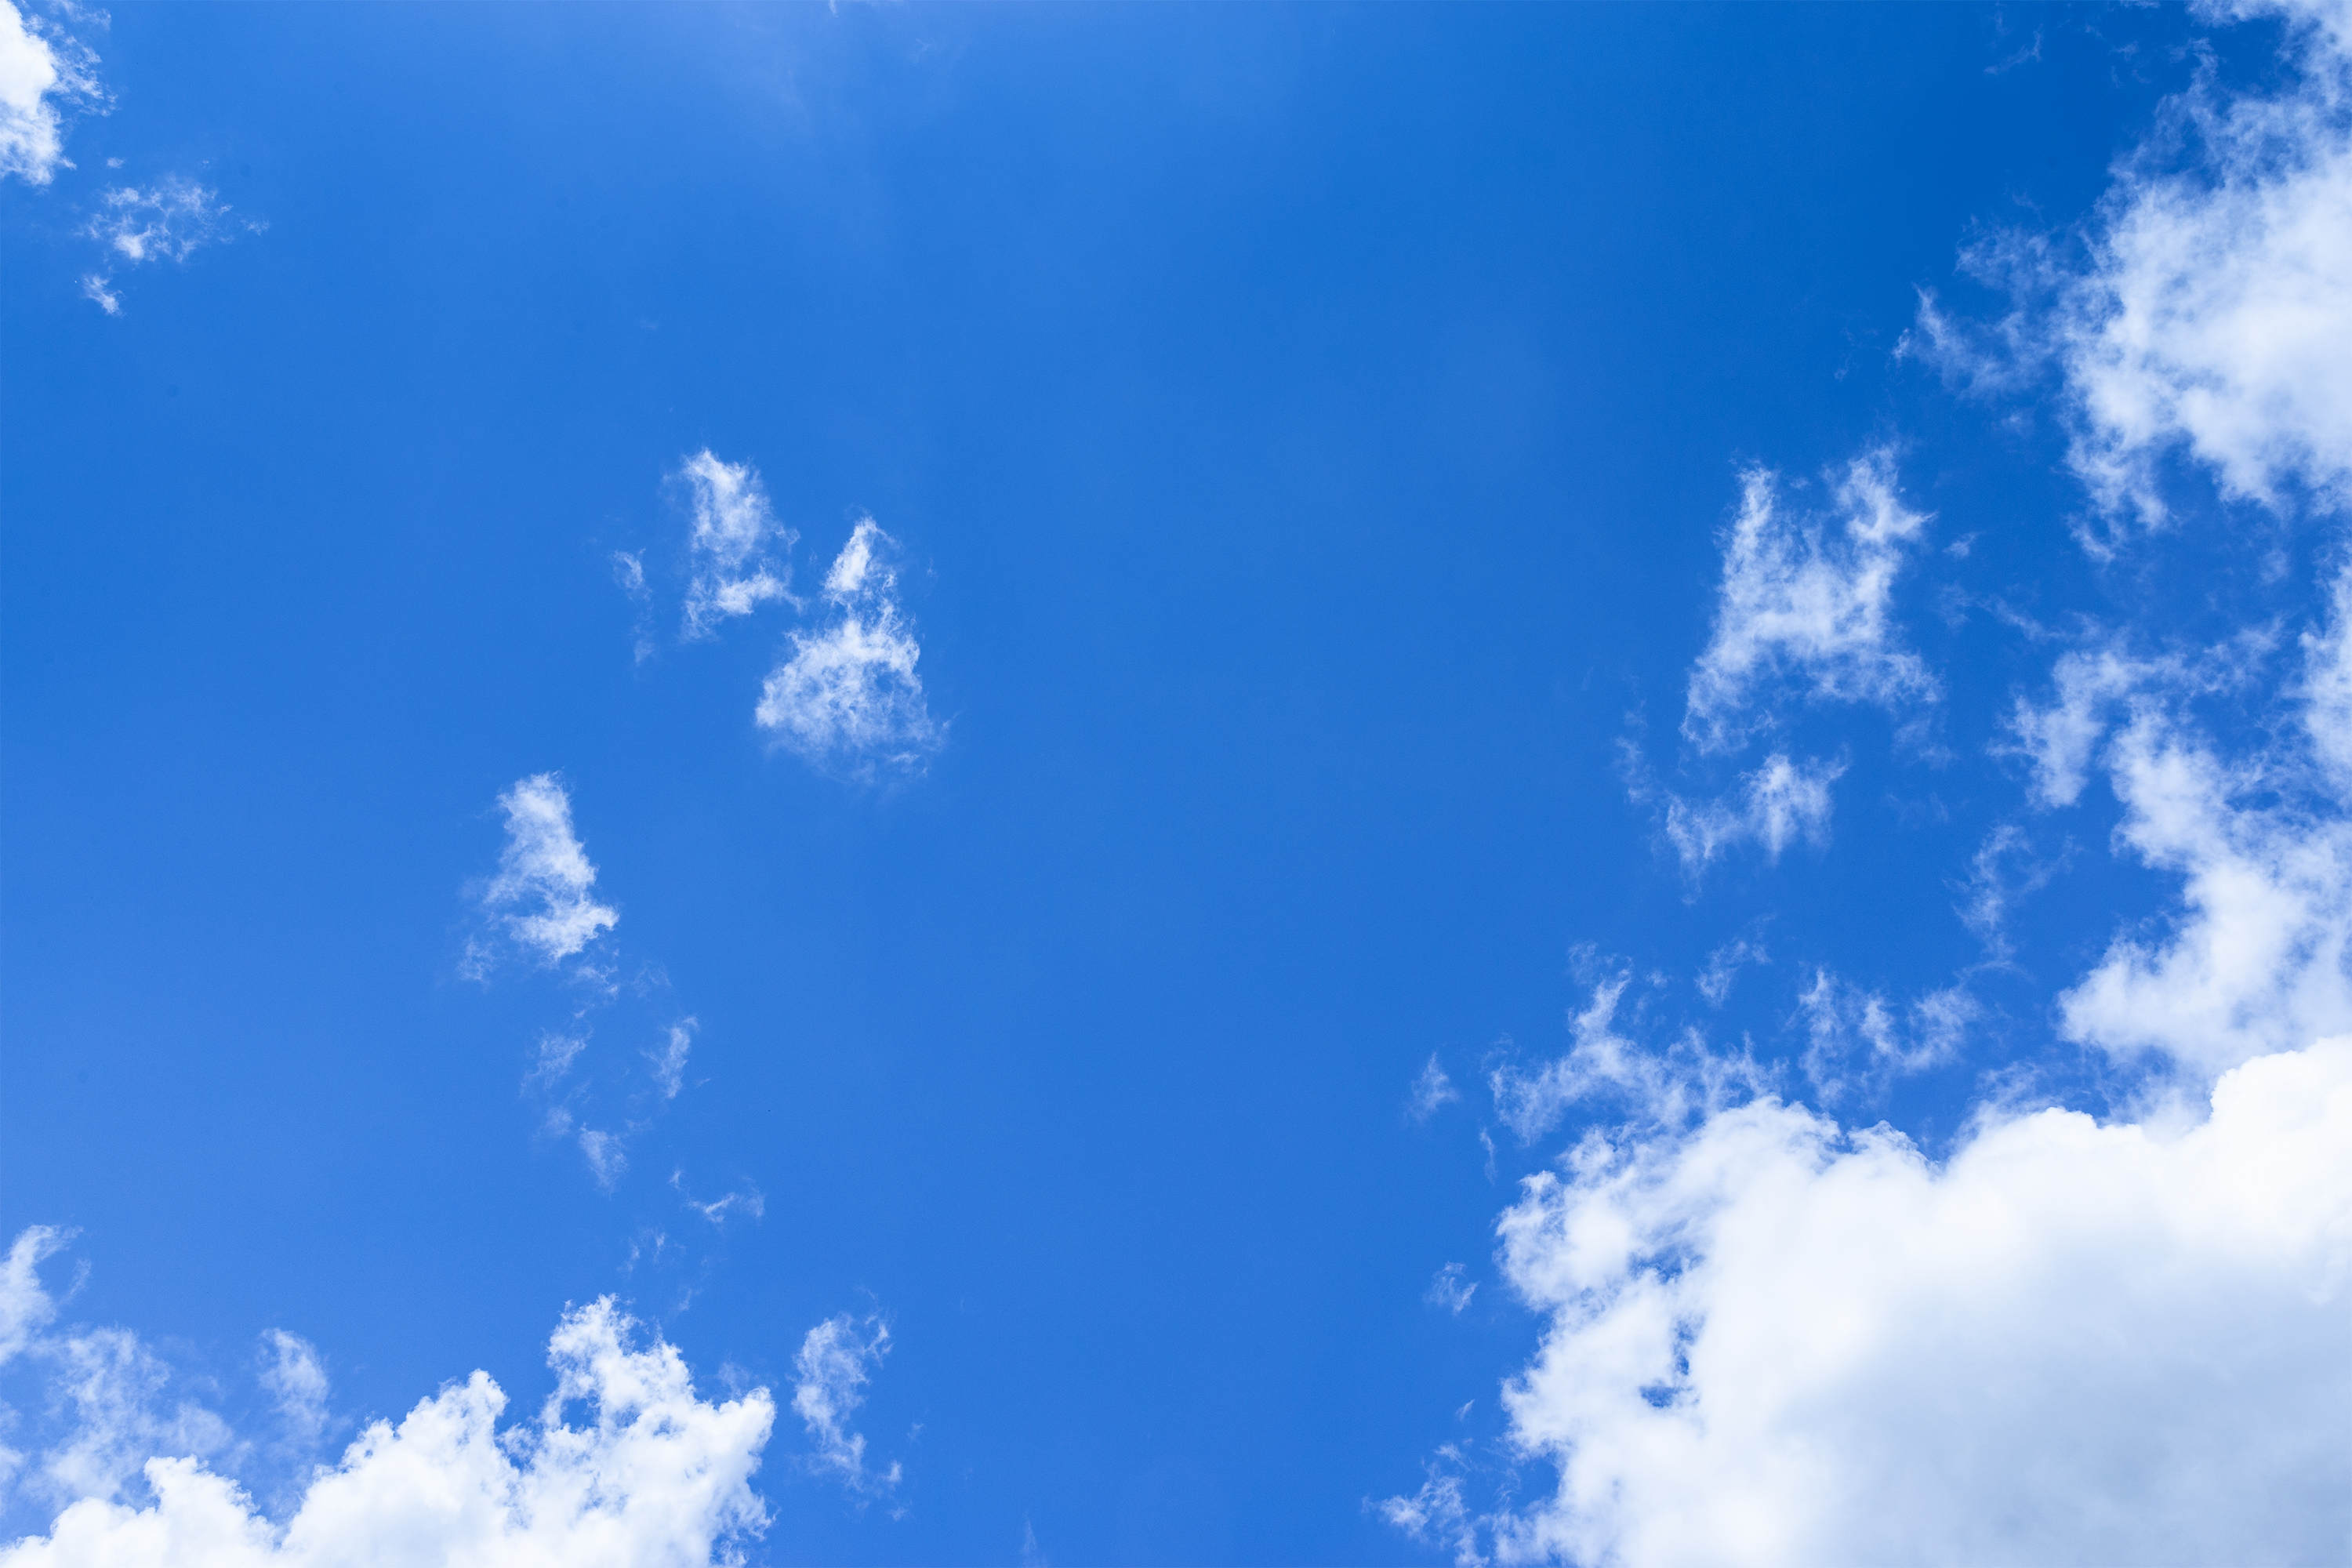 晴天の空と雲 無料の高画質フリー写真素材 イメージズラボ